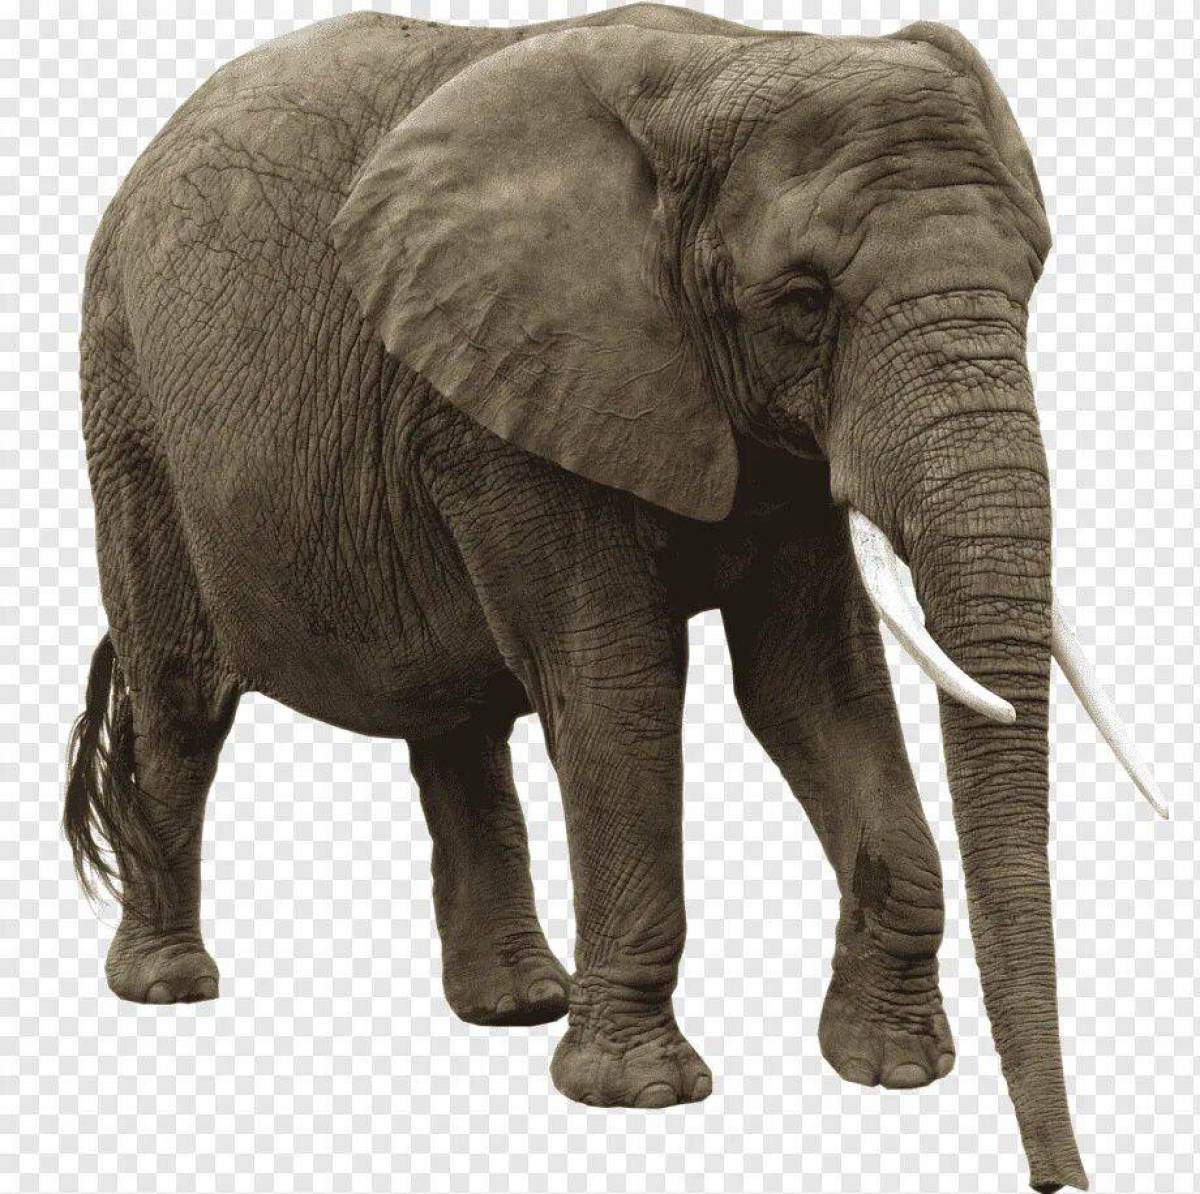 Elephant present. Слон. Слон без фона. Животные на прозрачном фоне. Изображение слона.